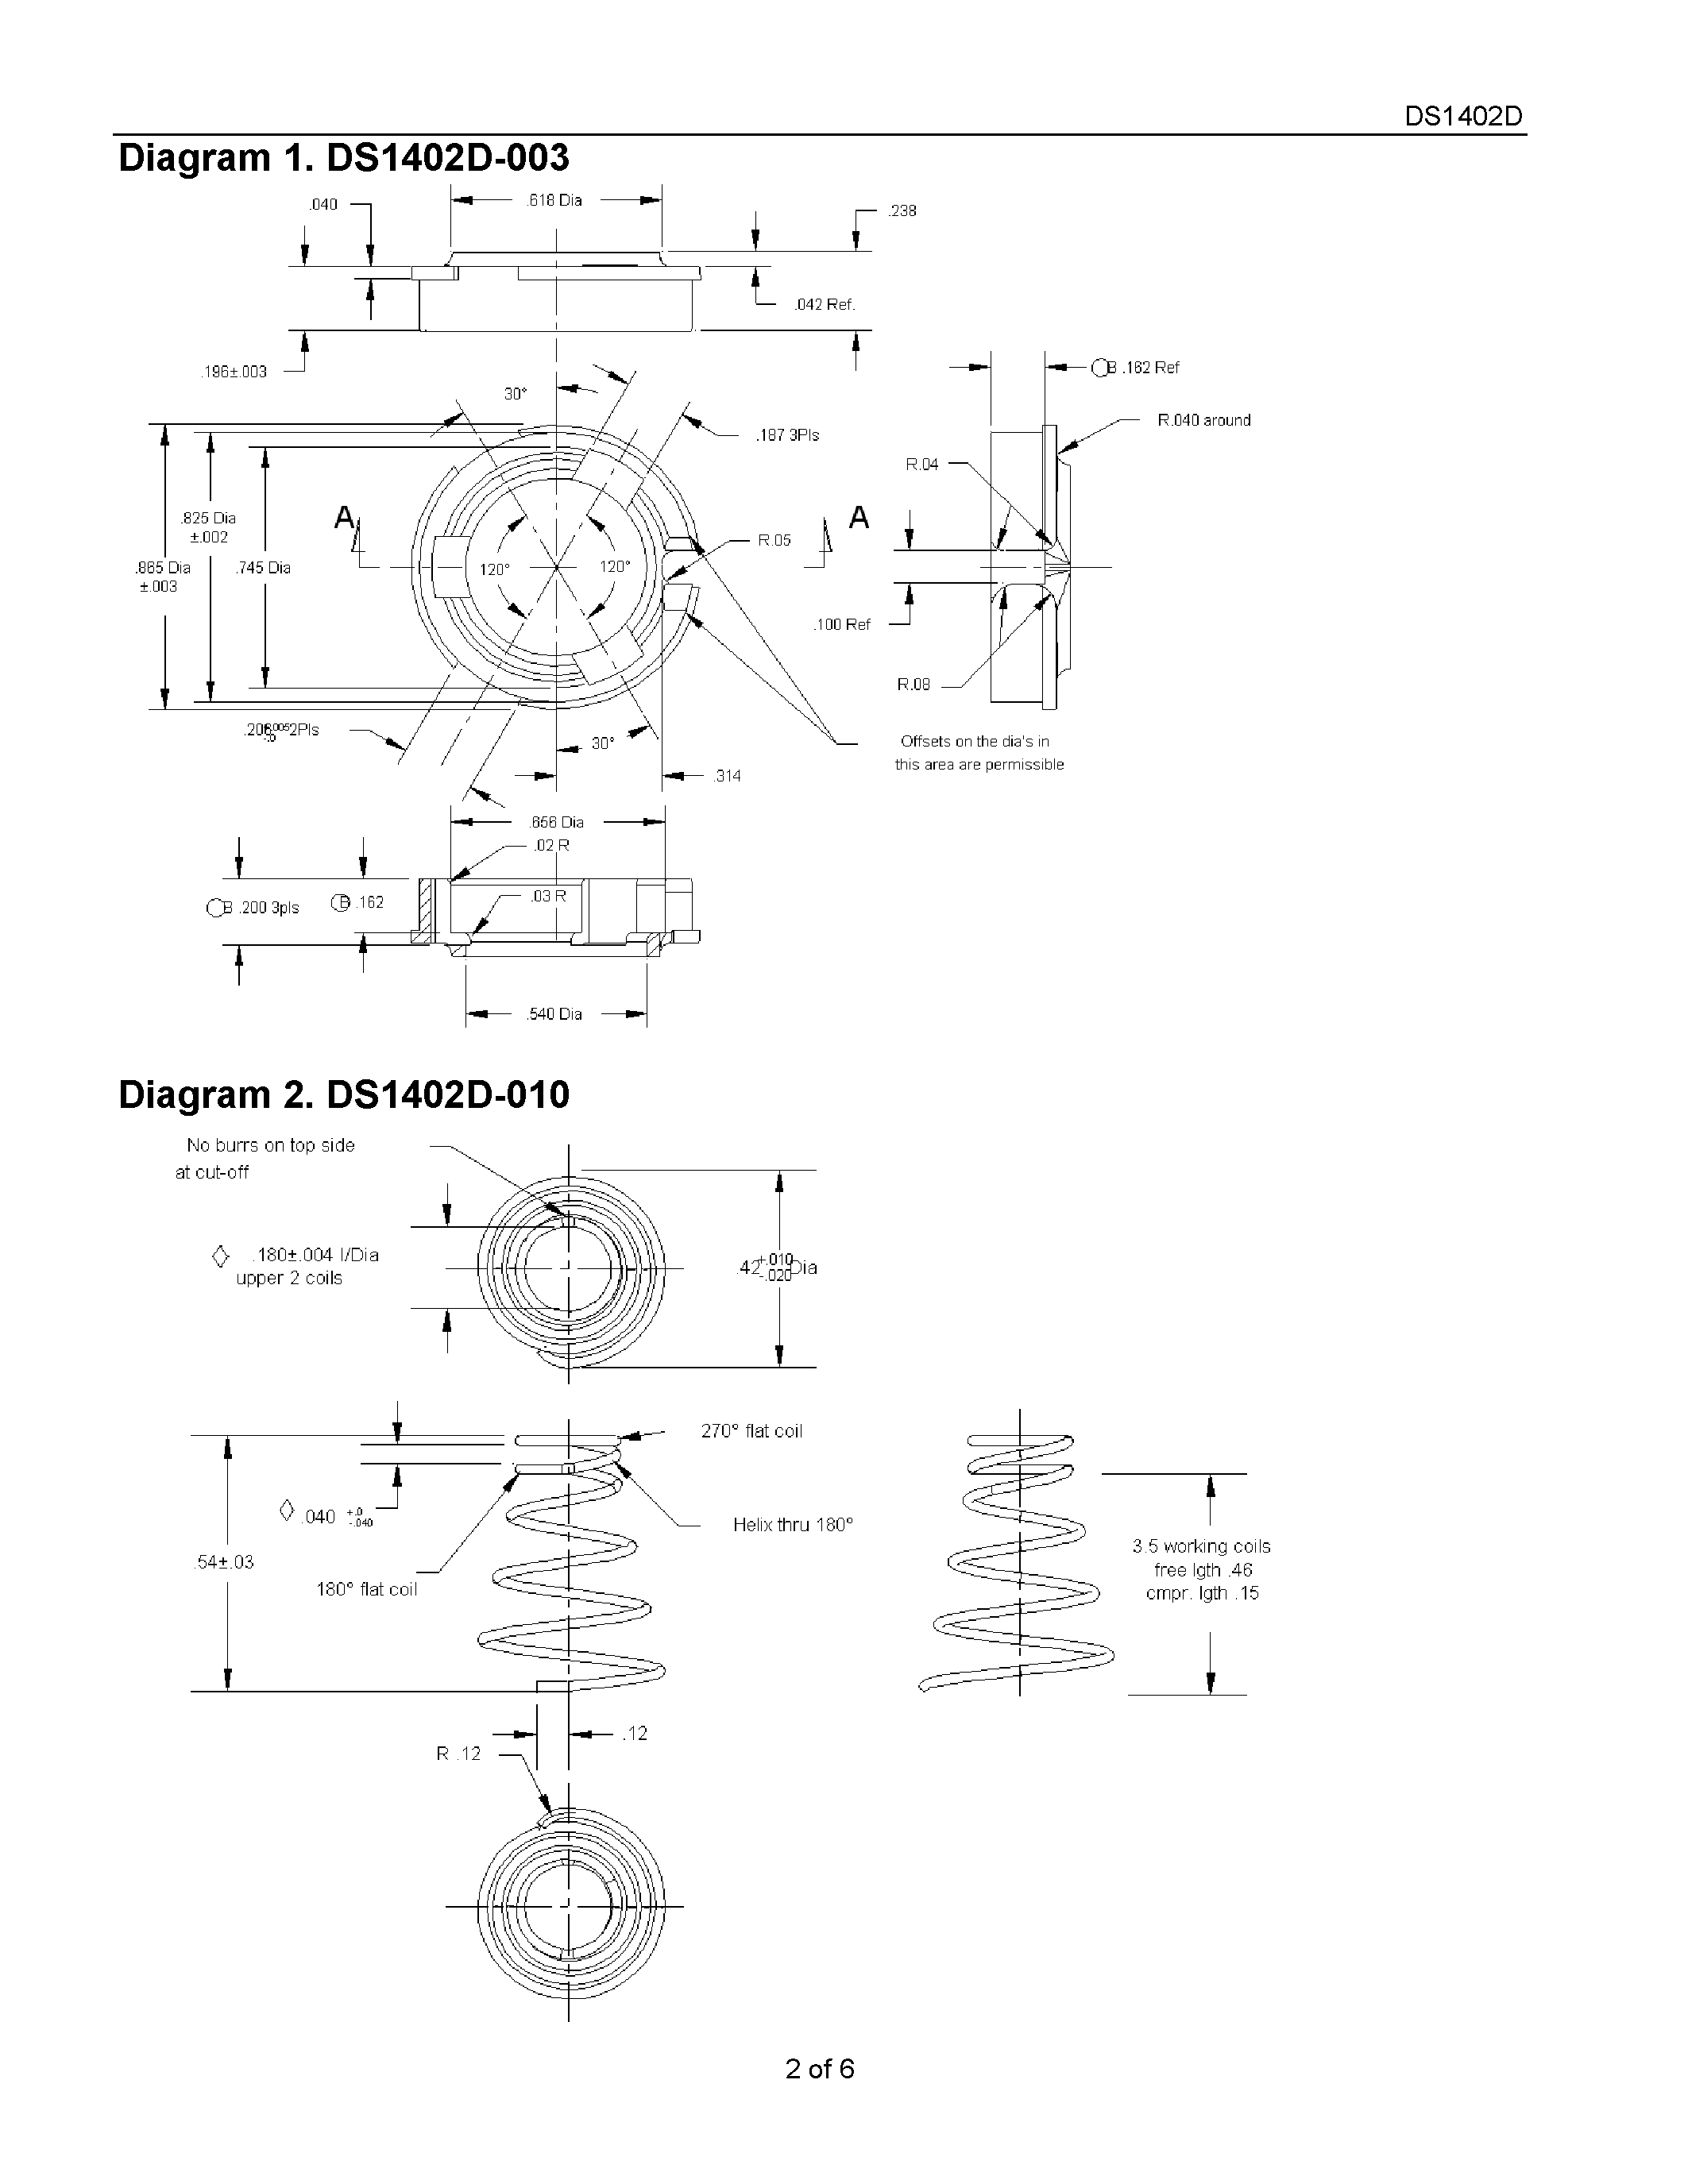 Даташит DS1402D-3 - iButton Probe Component Parts страница 2